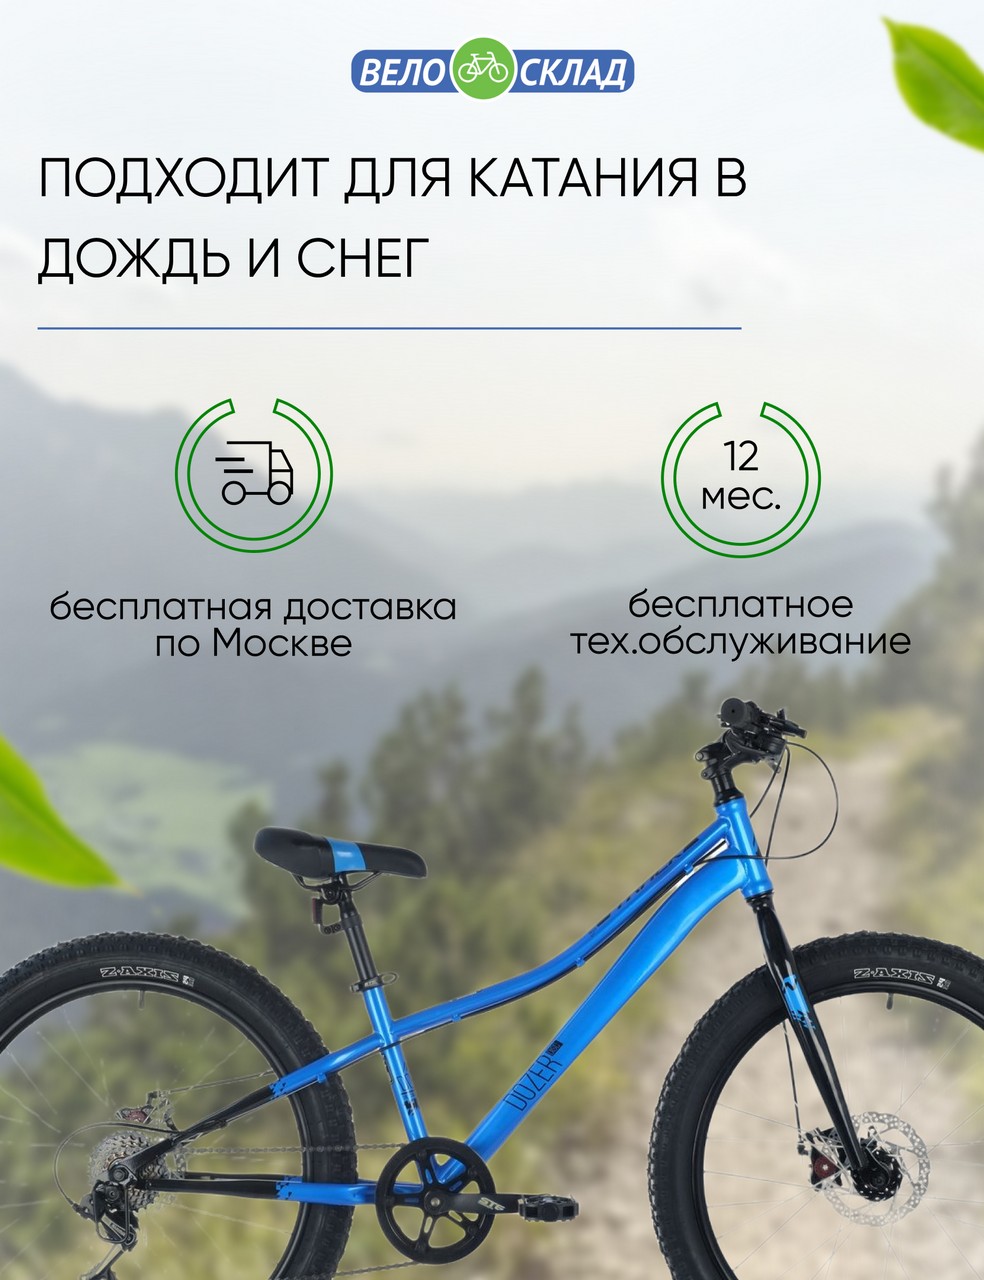 Подростковый велосипед Novatrack Dozer 24 STD Disc, год 2021, цвет Синий, ростовка 12